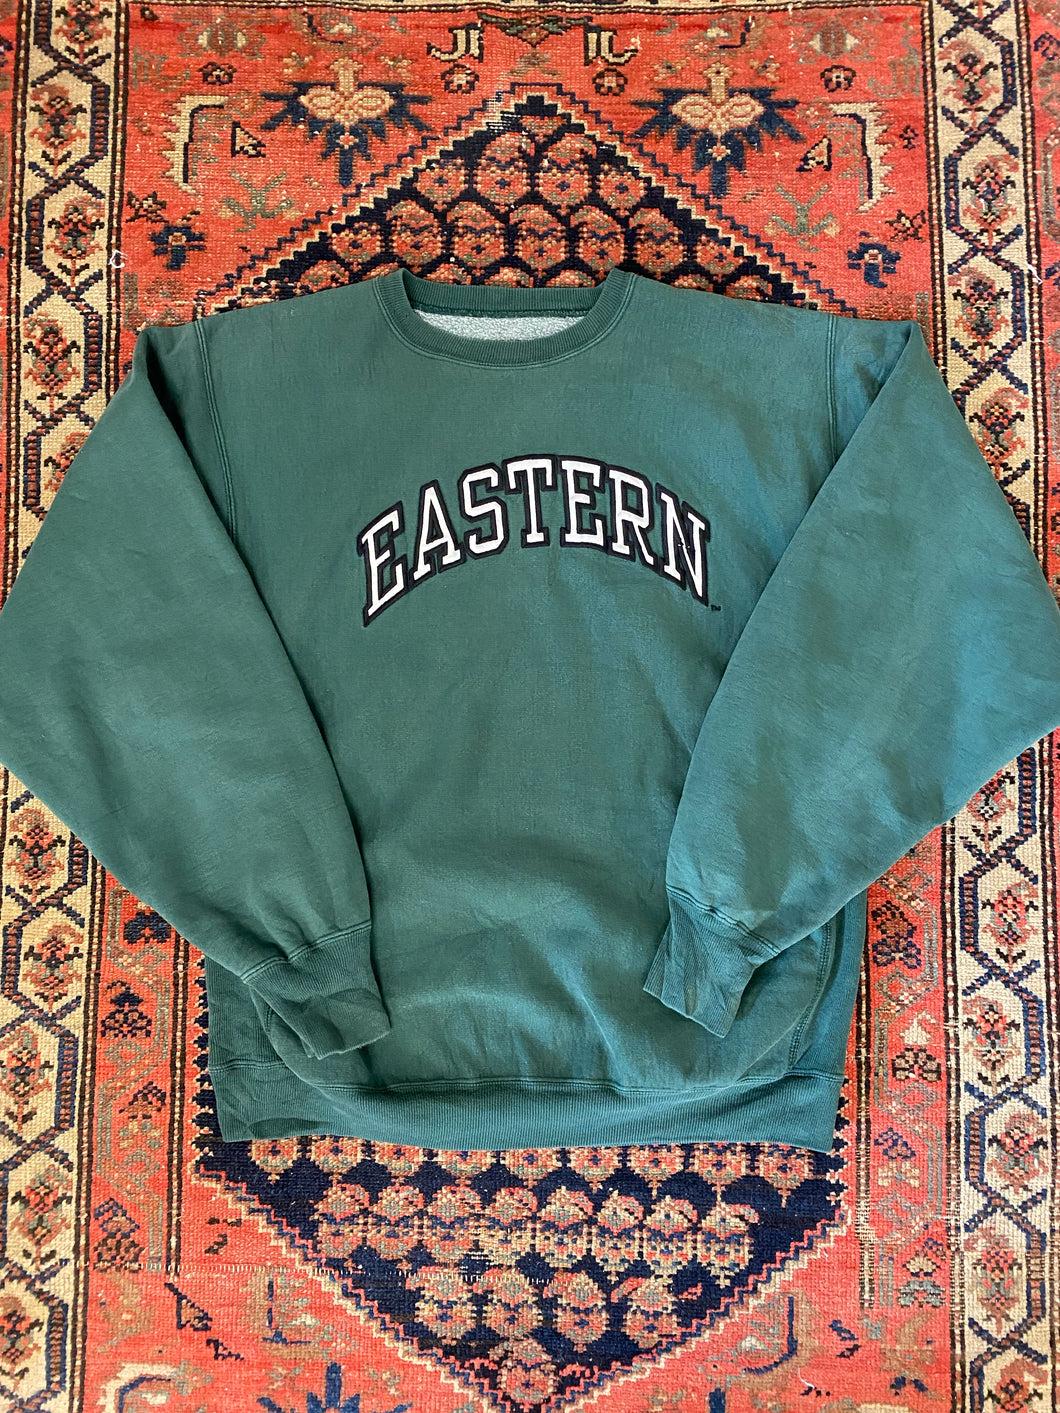 Vintage Eastern Varsity Crewneck - XL